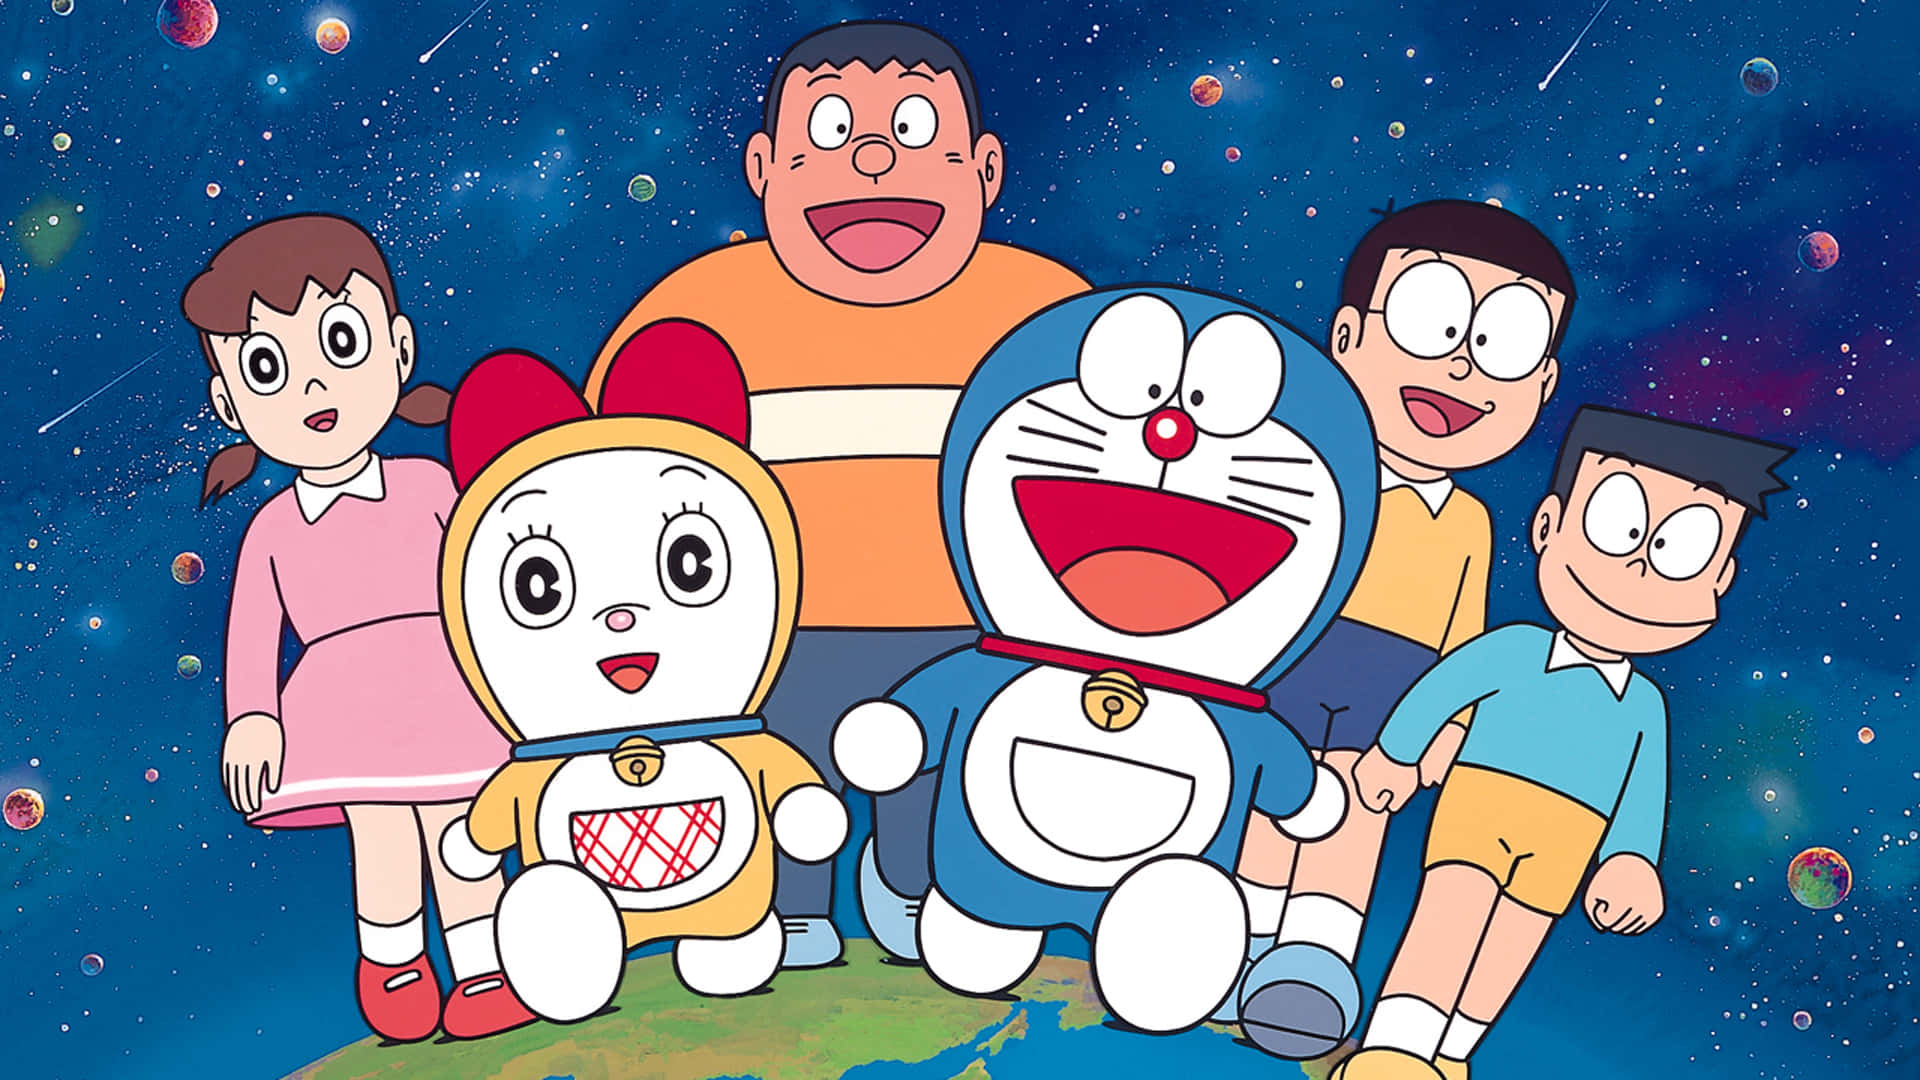 Fotode Grupo De Amigos Com Doraemon Como Papel De Parede Do Computador Ou Celular.